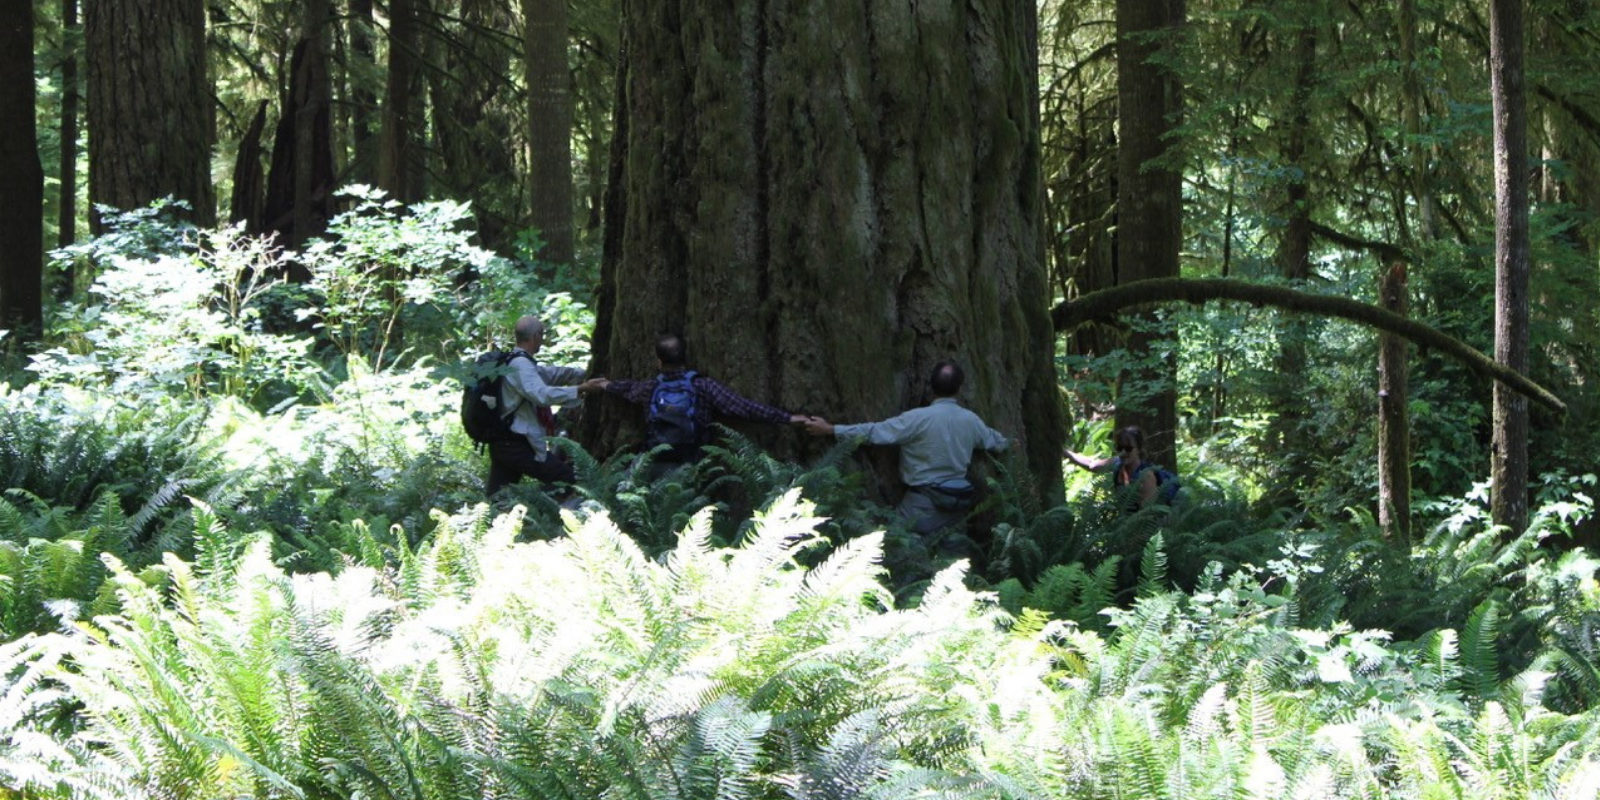 Old-growth Douglas fir